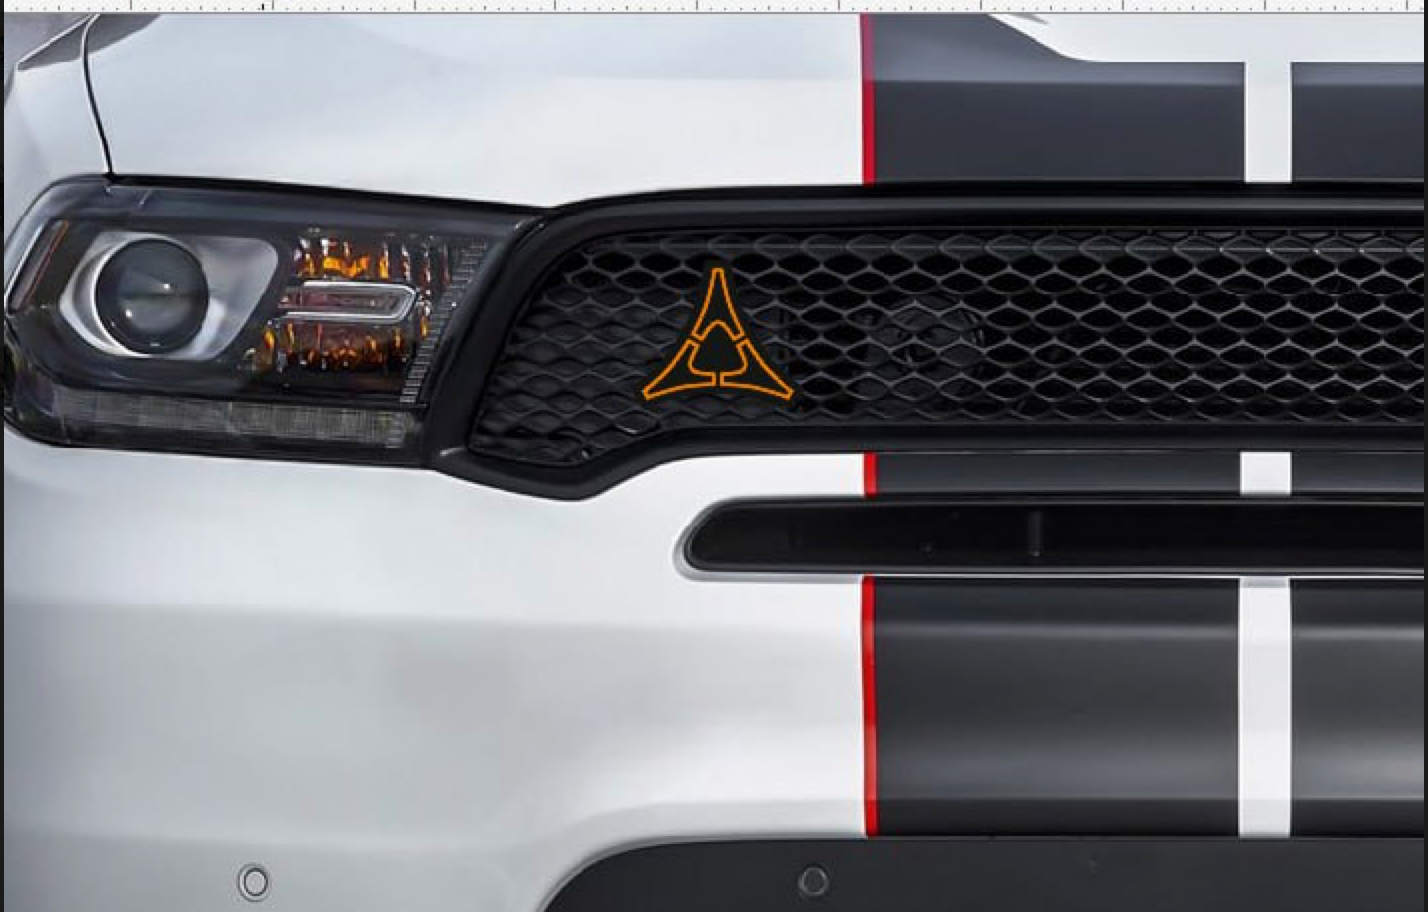 DODGE Radiator grille emblem with REFLECTIVE FRATZOG logo